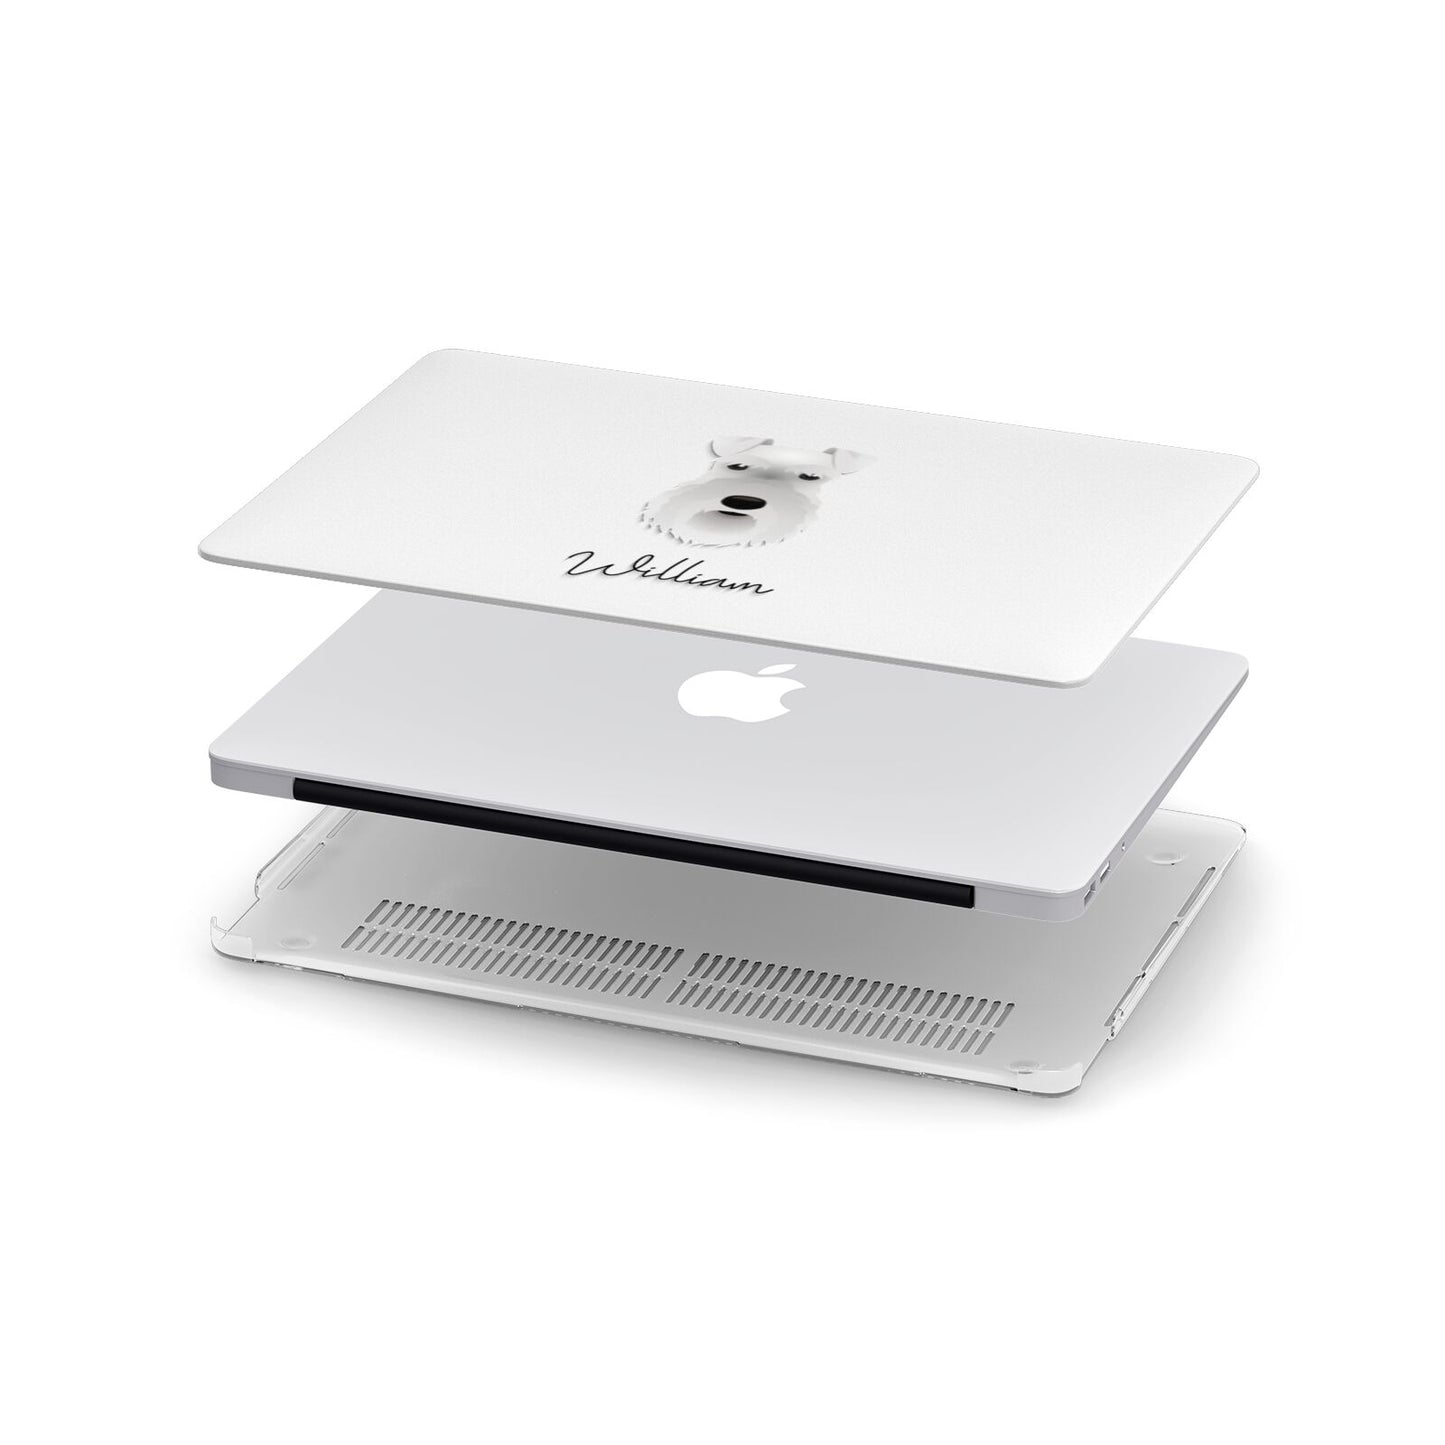 Schnauzer Personalised Apple MacBook Case in Detail